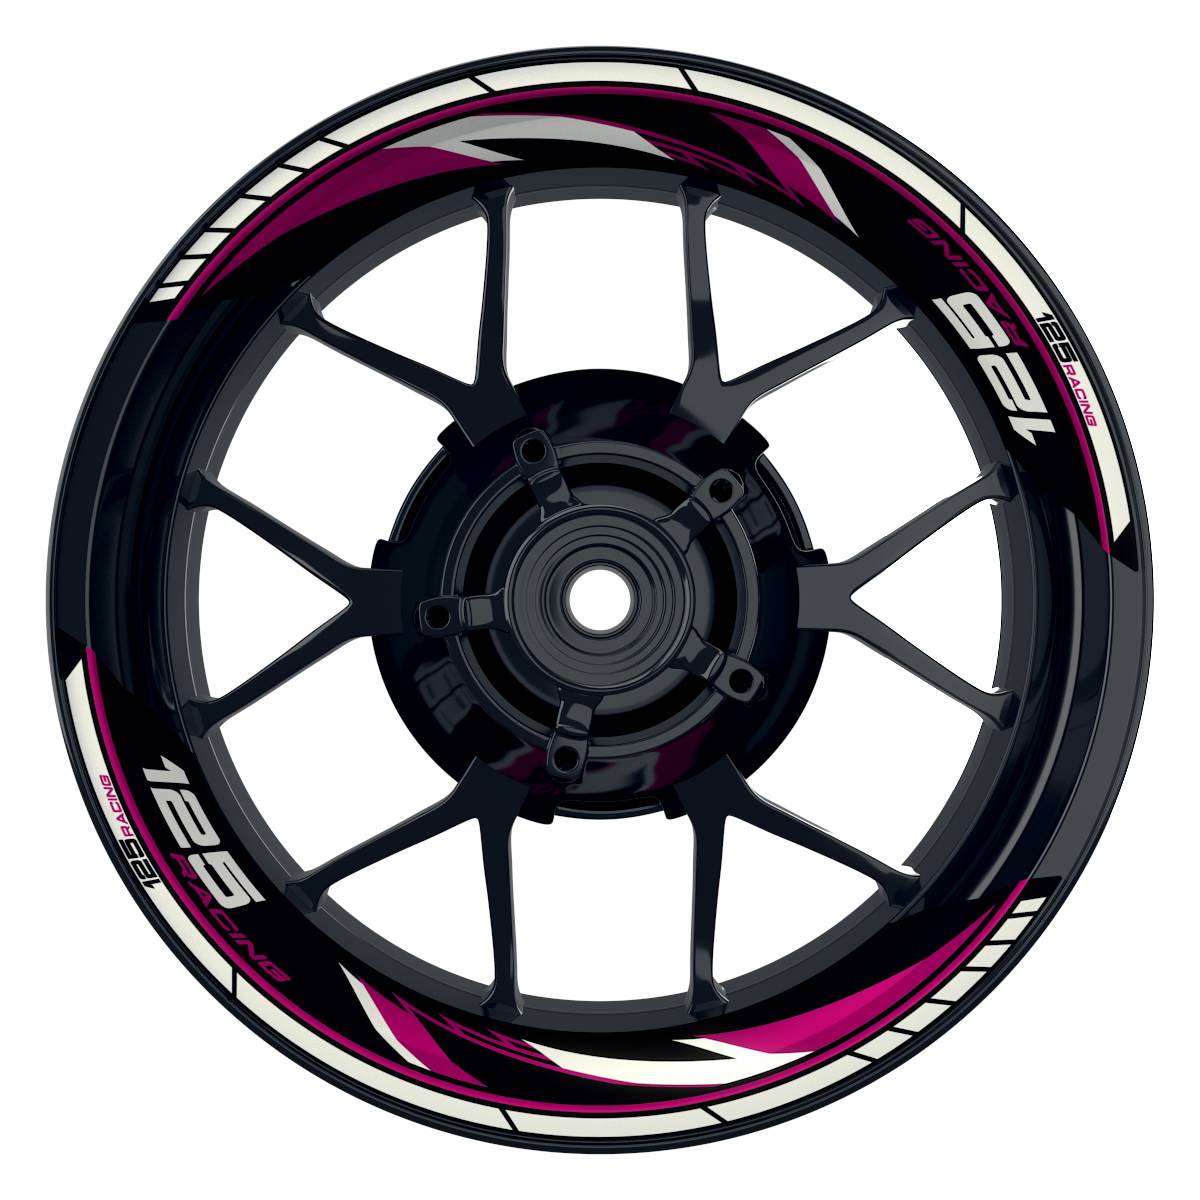 KTM Racing 125 Razor schwarz pink Frontansicht